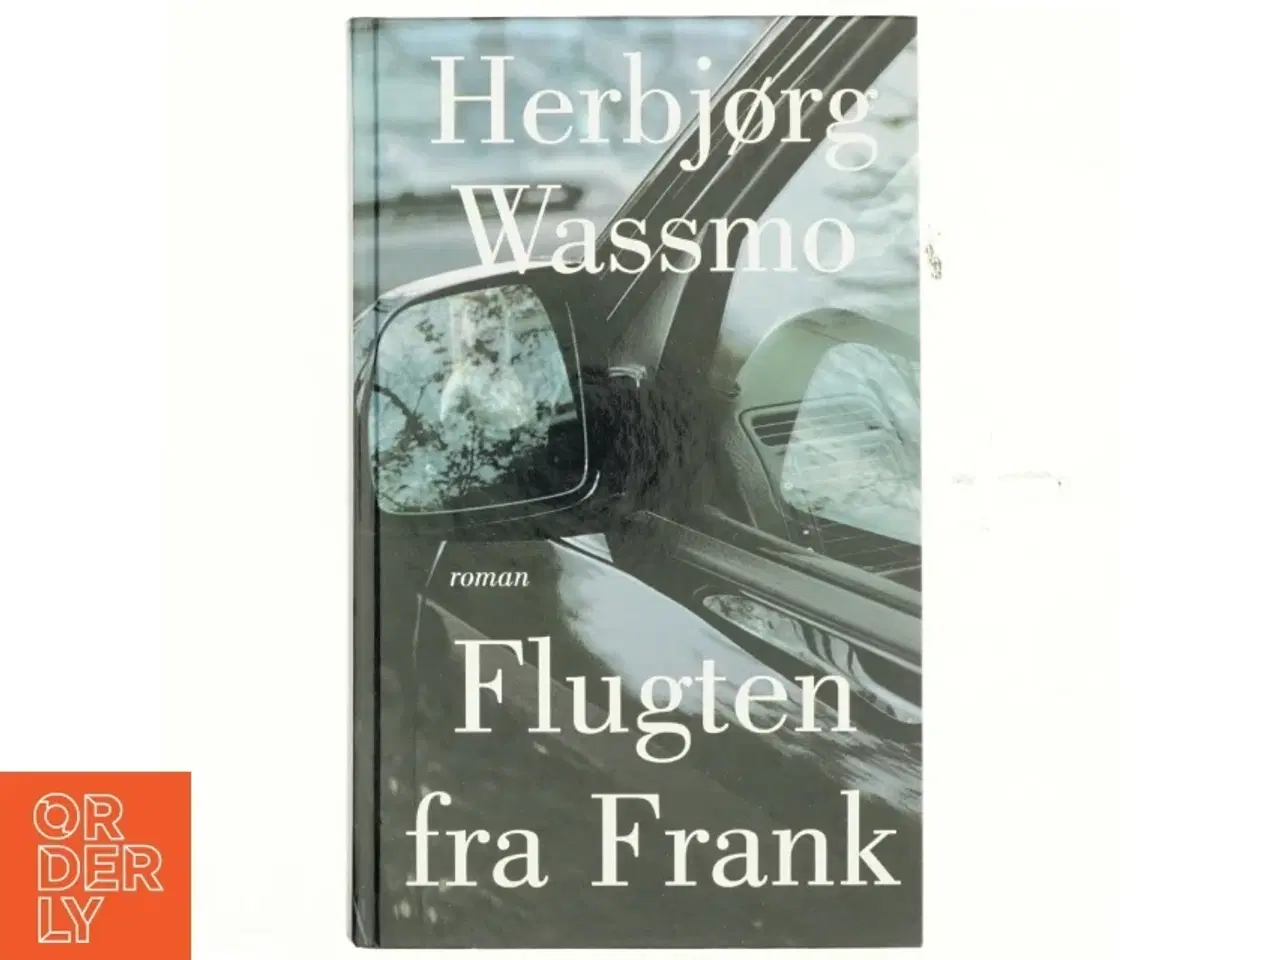 Billede 1 - Flugten fra Frank : roman af Herbjørg Wassmo (Bog)